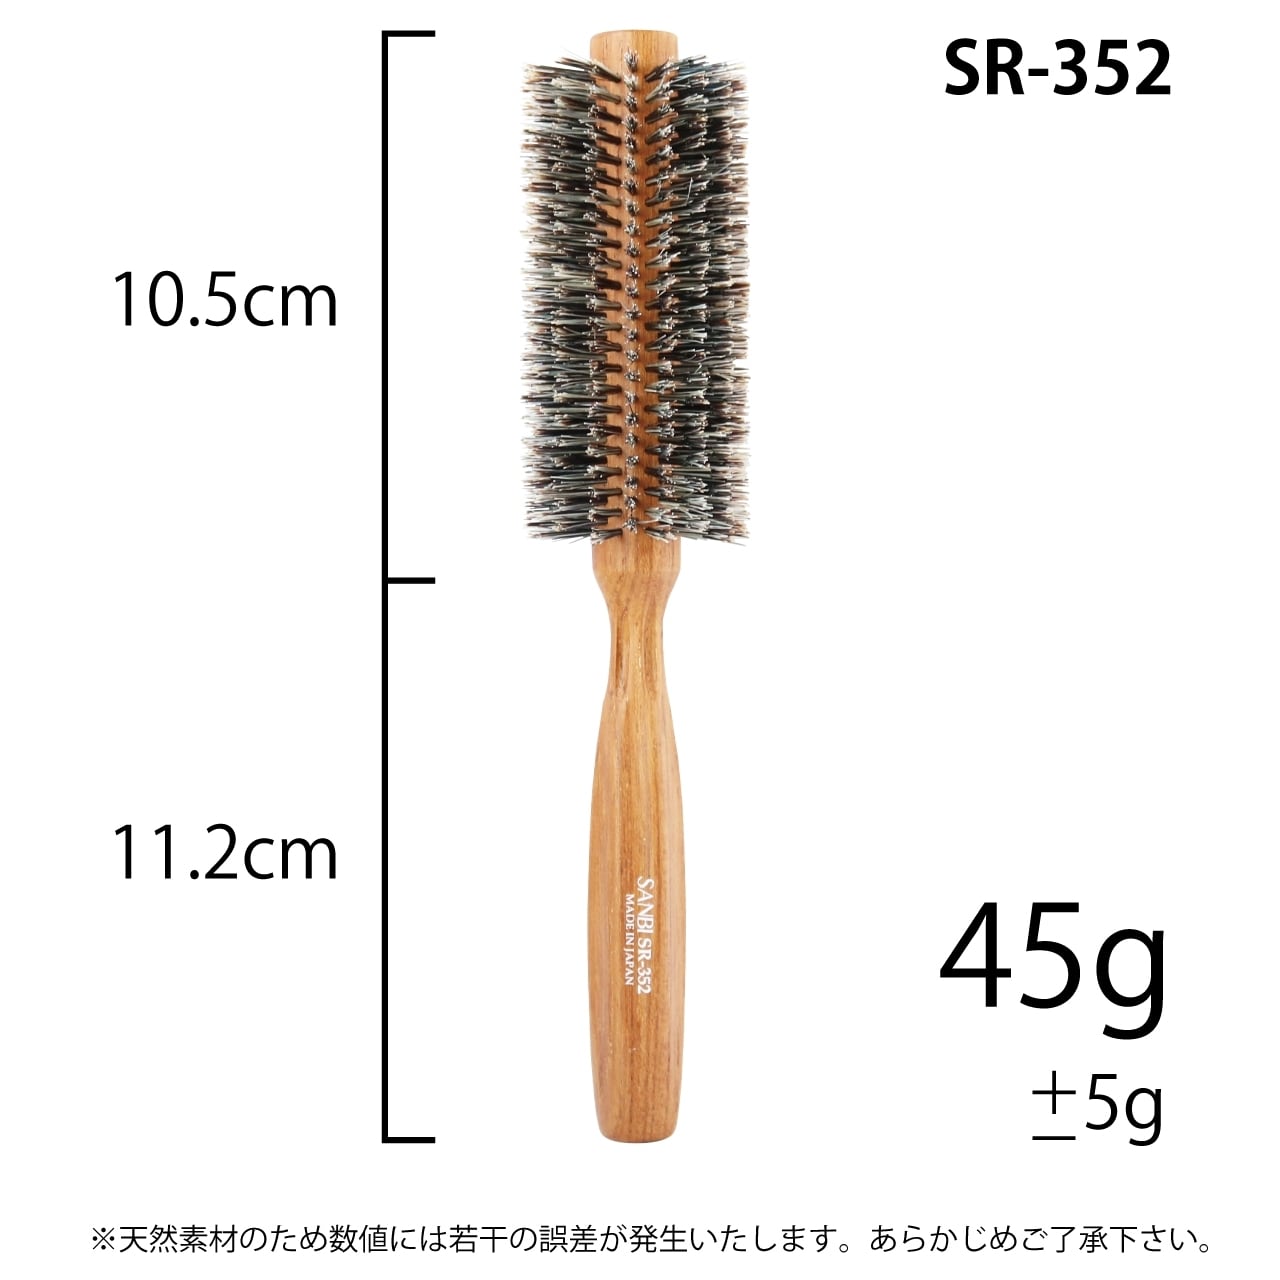 サンビー ロールブラシ -お取り寄せ品- SR-702 柔らかい豚毛 【83%OFF!】 柔らかい豚毛